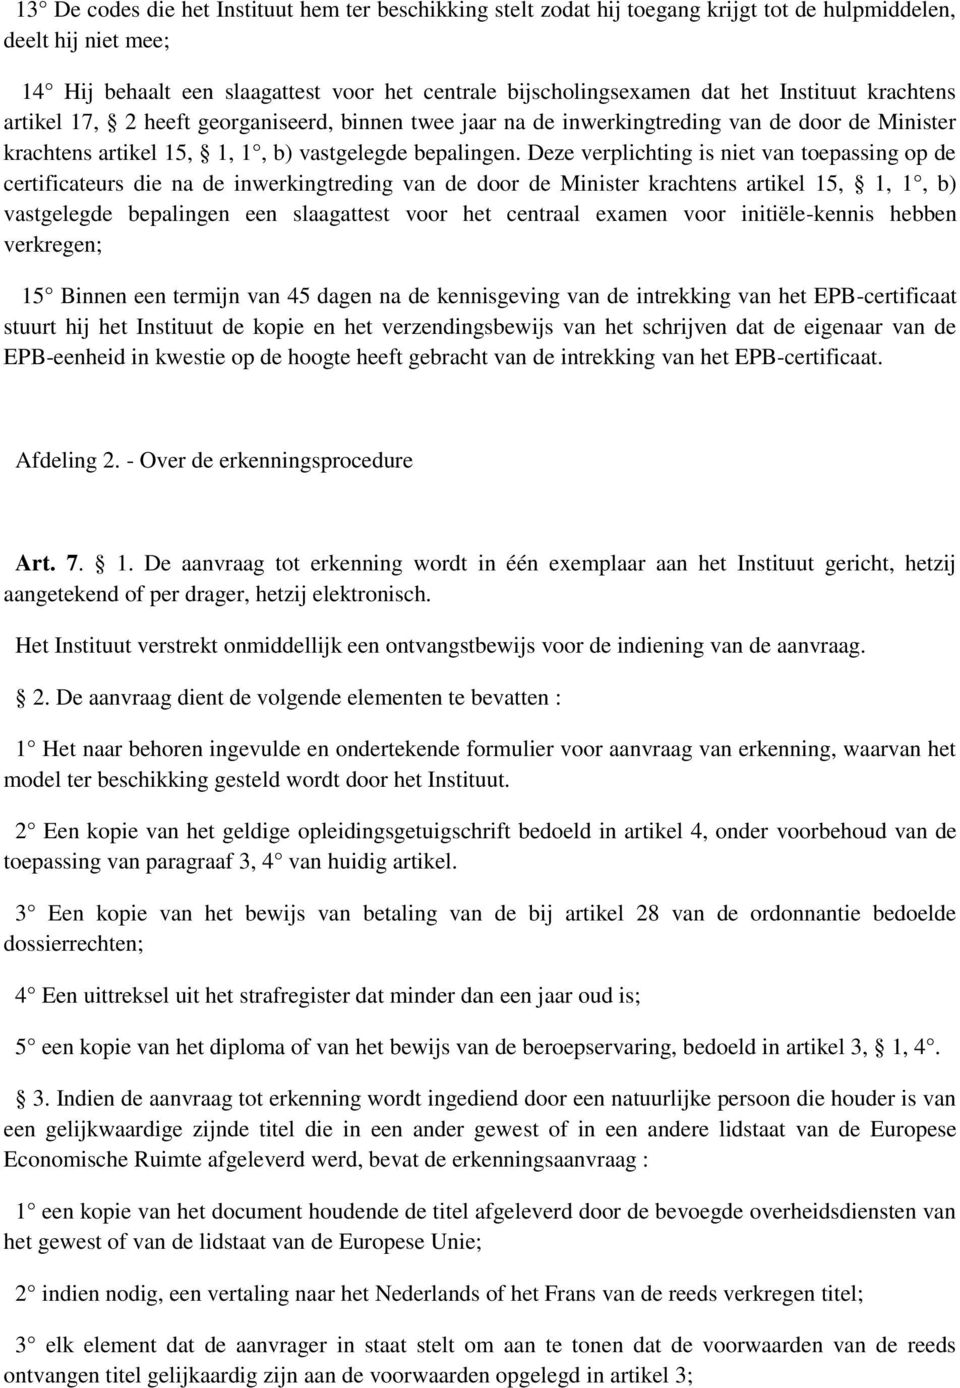 Deze verplichting is niet van tepassing p de certificateurs die na de inwerkingtreding van de dr de Minister krachtens artikel 15, 1, 1, b) vastgelegde bepalingen een slaagattest vr het centraal